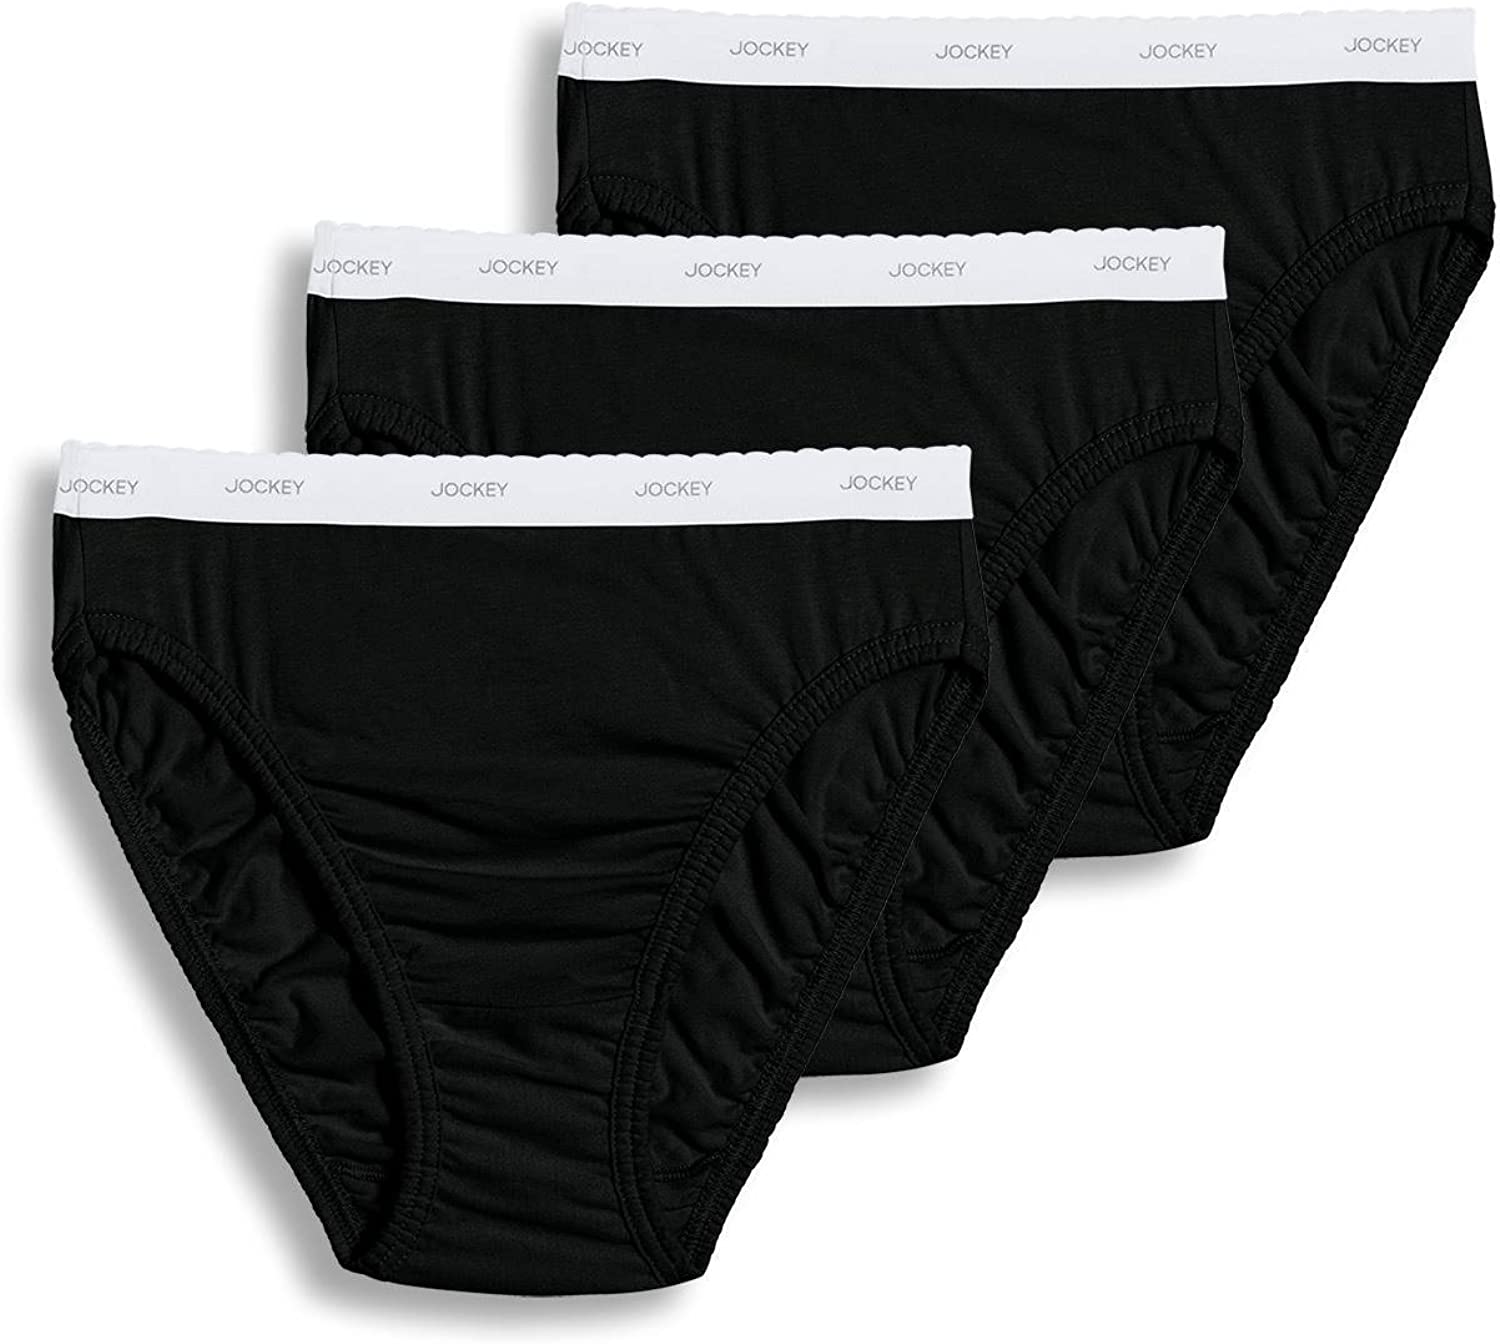 Jockey Women's Underwear, Panties and Shapewear